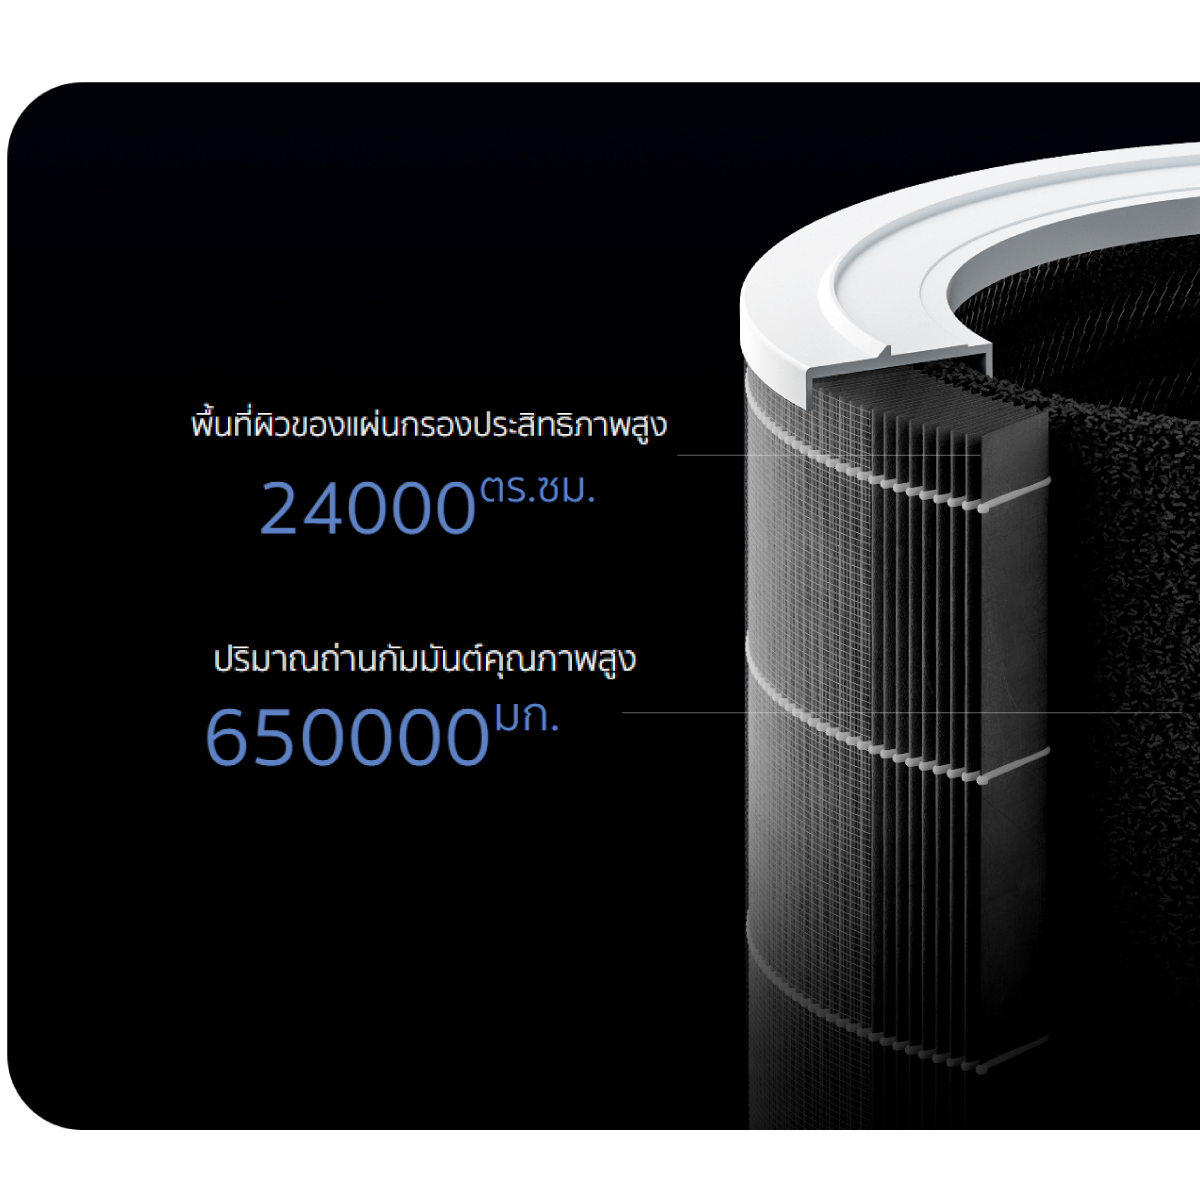 เครื่องฟอกอากาศ Xiaomi รุ่น Smart Air Purifier 4 ฟอกอากาศในบริเวณที่คุณต้องการ 28-48 ตรม.